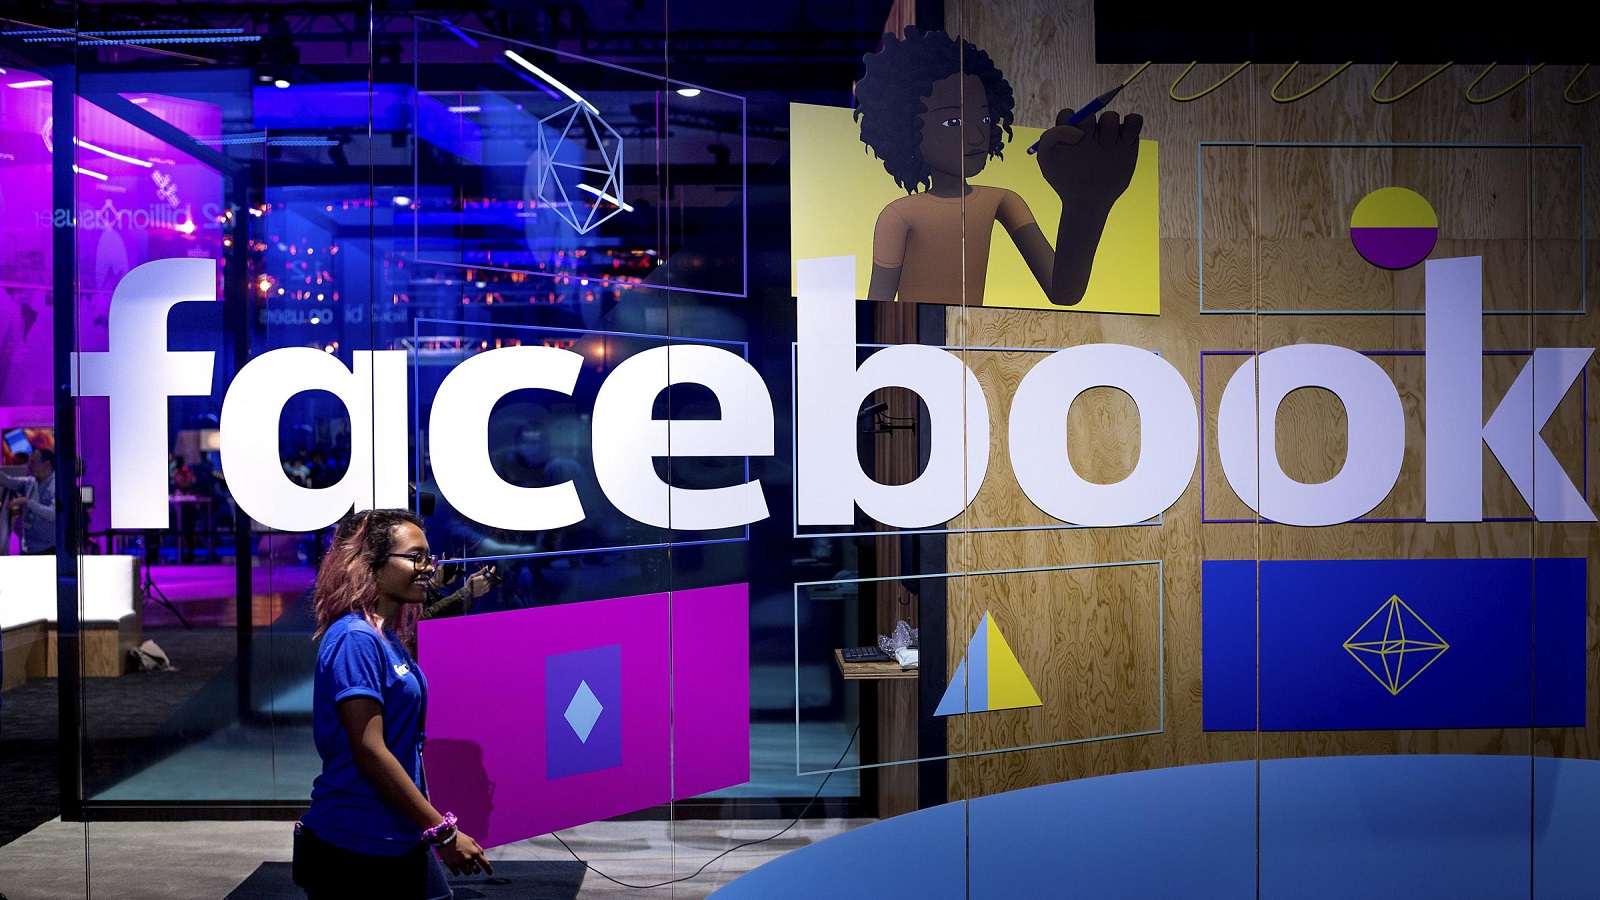 "فايسبوك" يؤيّد تحقيقات التدخل الروسي..ويسلّم الكونغرس آلاف البيانات